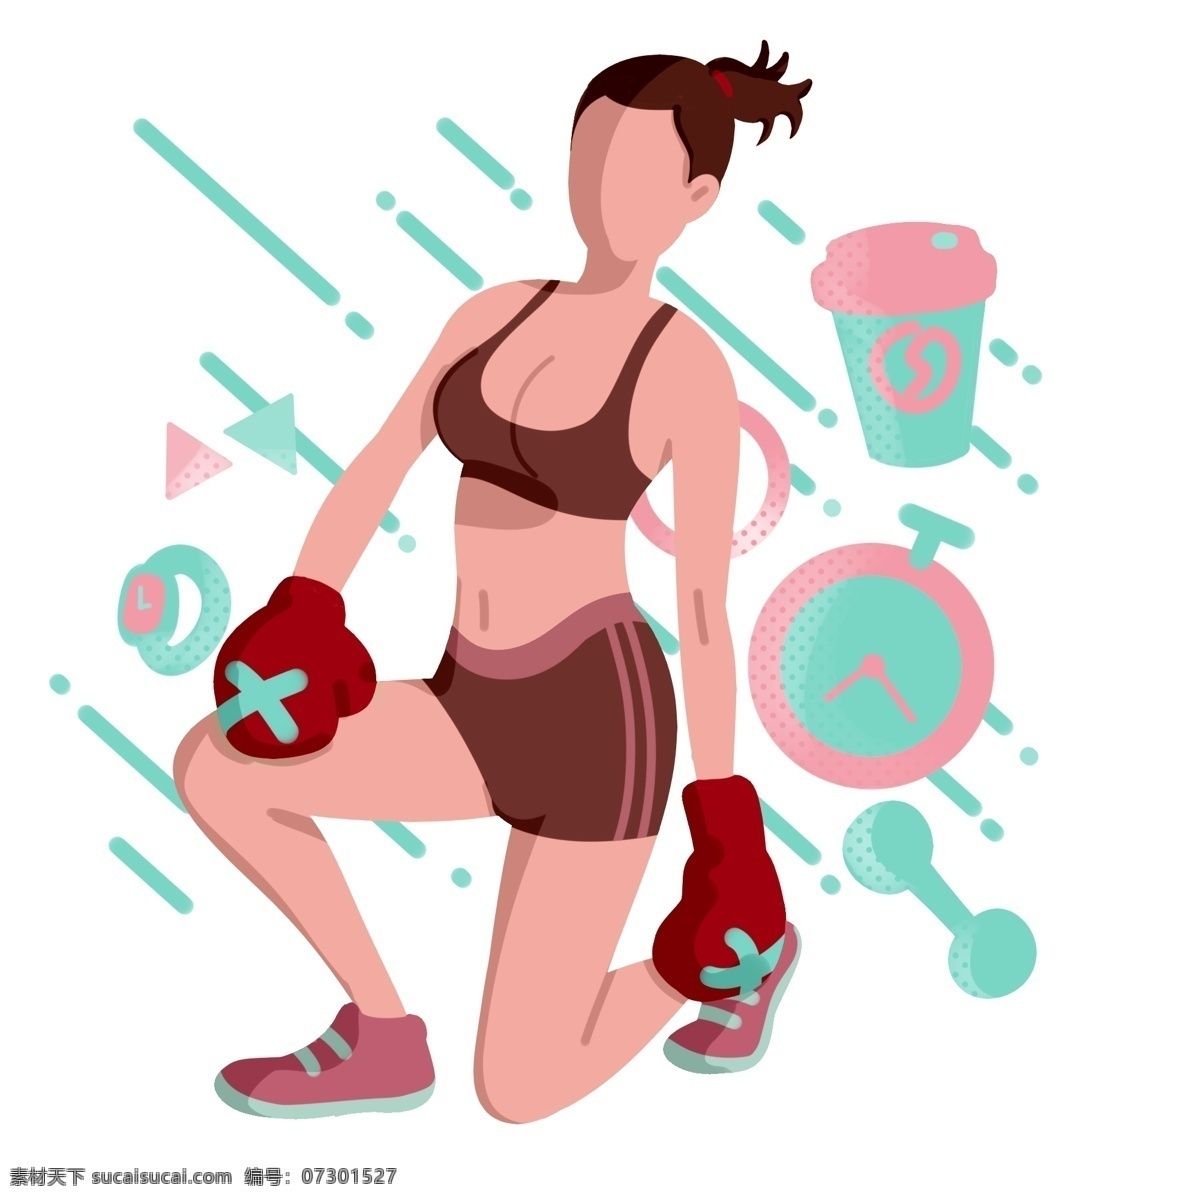 健身 运动 饮料 插画 健身的饮料 卡通插画 健身插画 运动插画 锻炼身体 强身健体 红色的手套